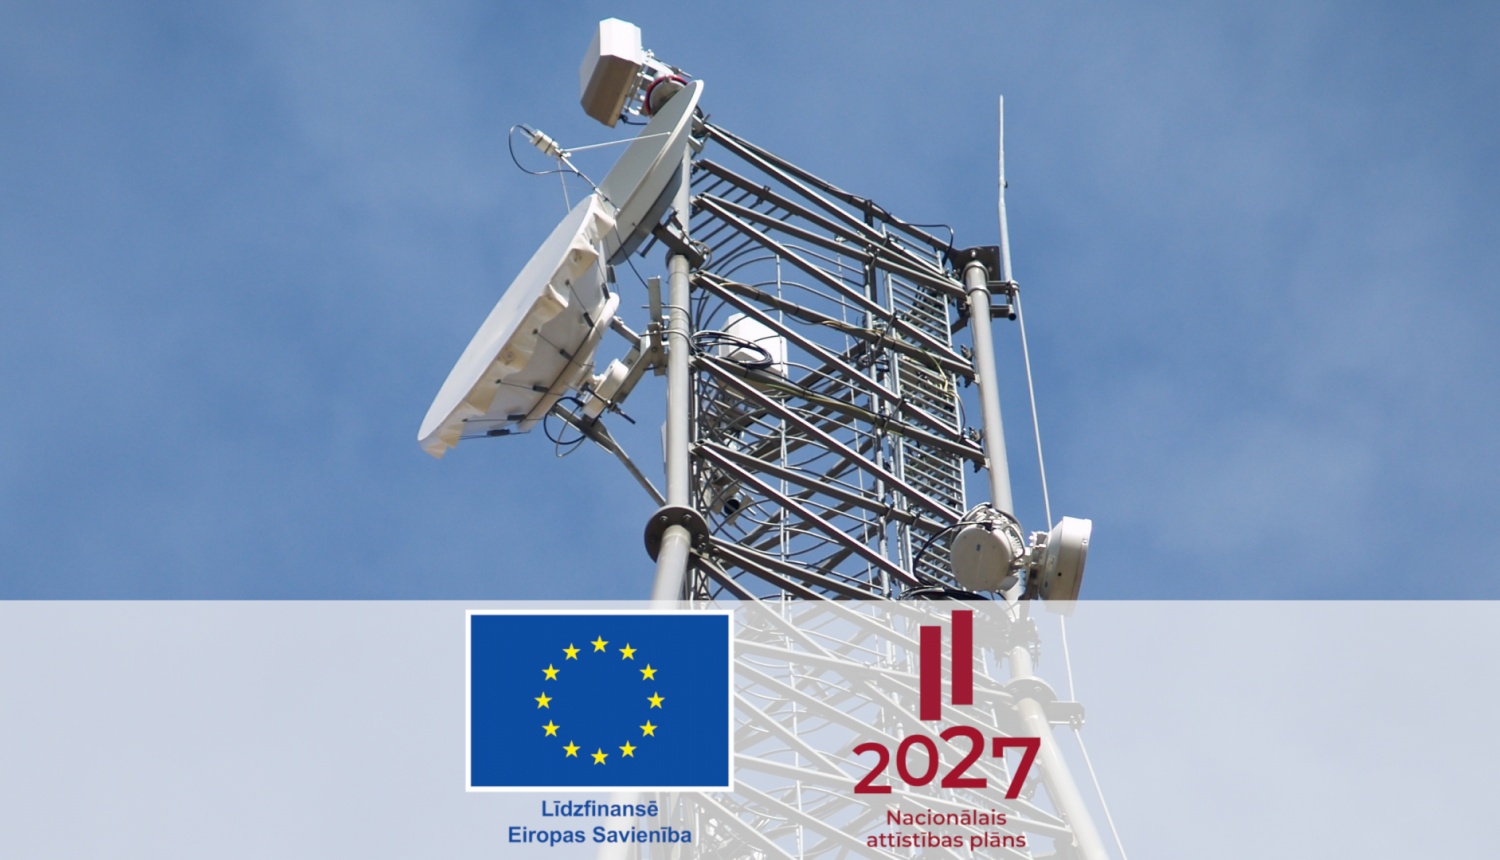 Fotoattēls, kurā redzams radio sakaru tornis un Eiropas Savienības līdzfinansējuma un Nacionālā attīstības plāna 2027 logotipi